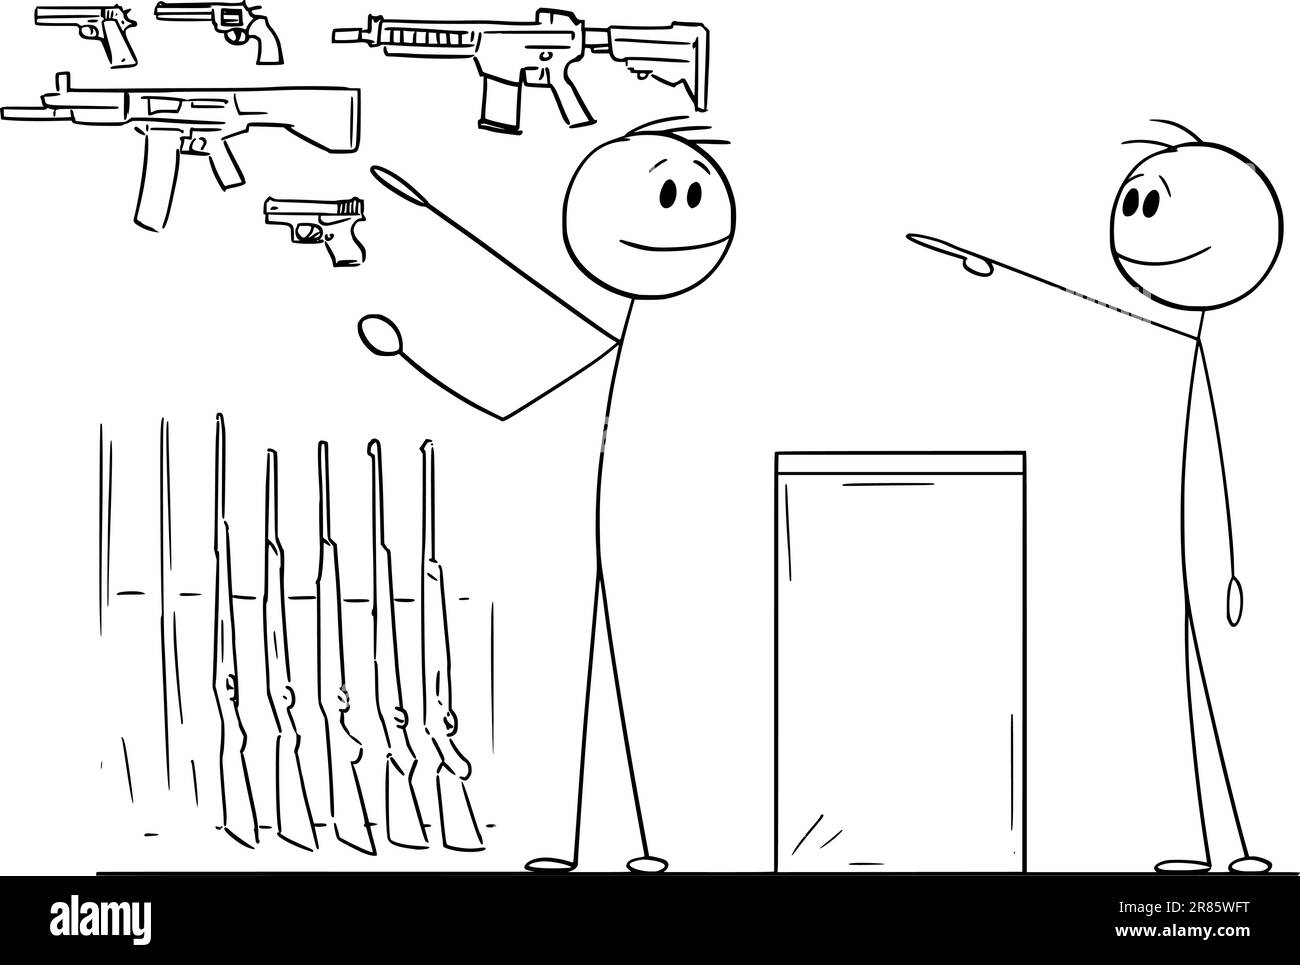 Person kauft Gewehr in Waffenladen, Vektor-Cartoon-Stab-Abbildung Stock Vektor